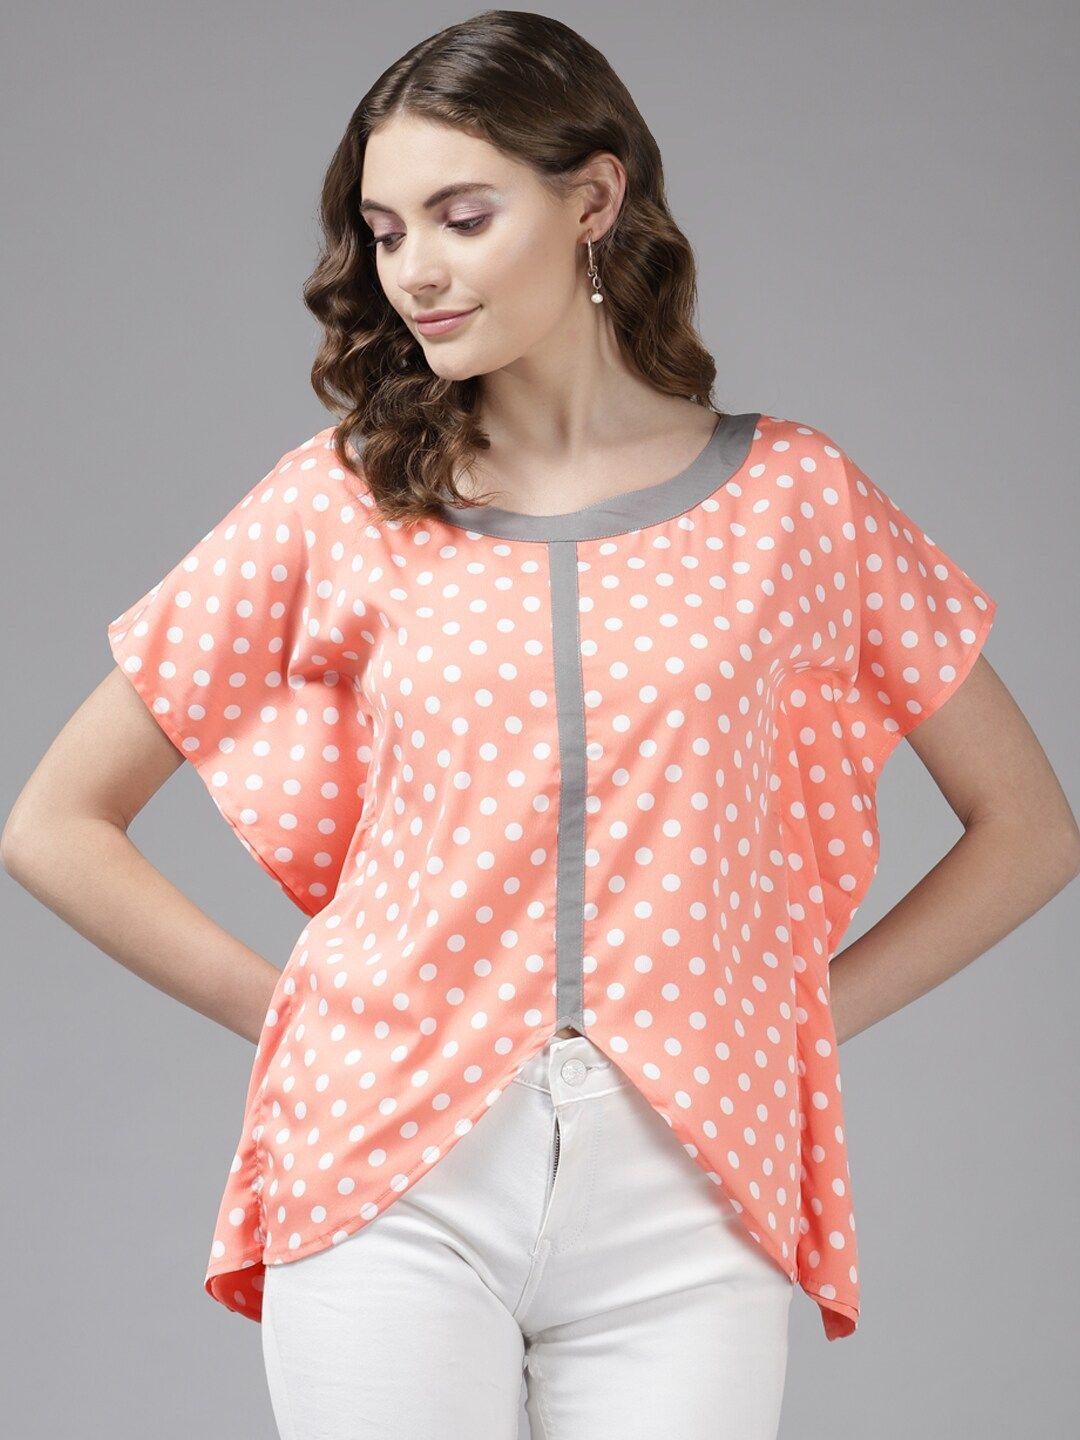 baesd polka dot printed extended sleeves top